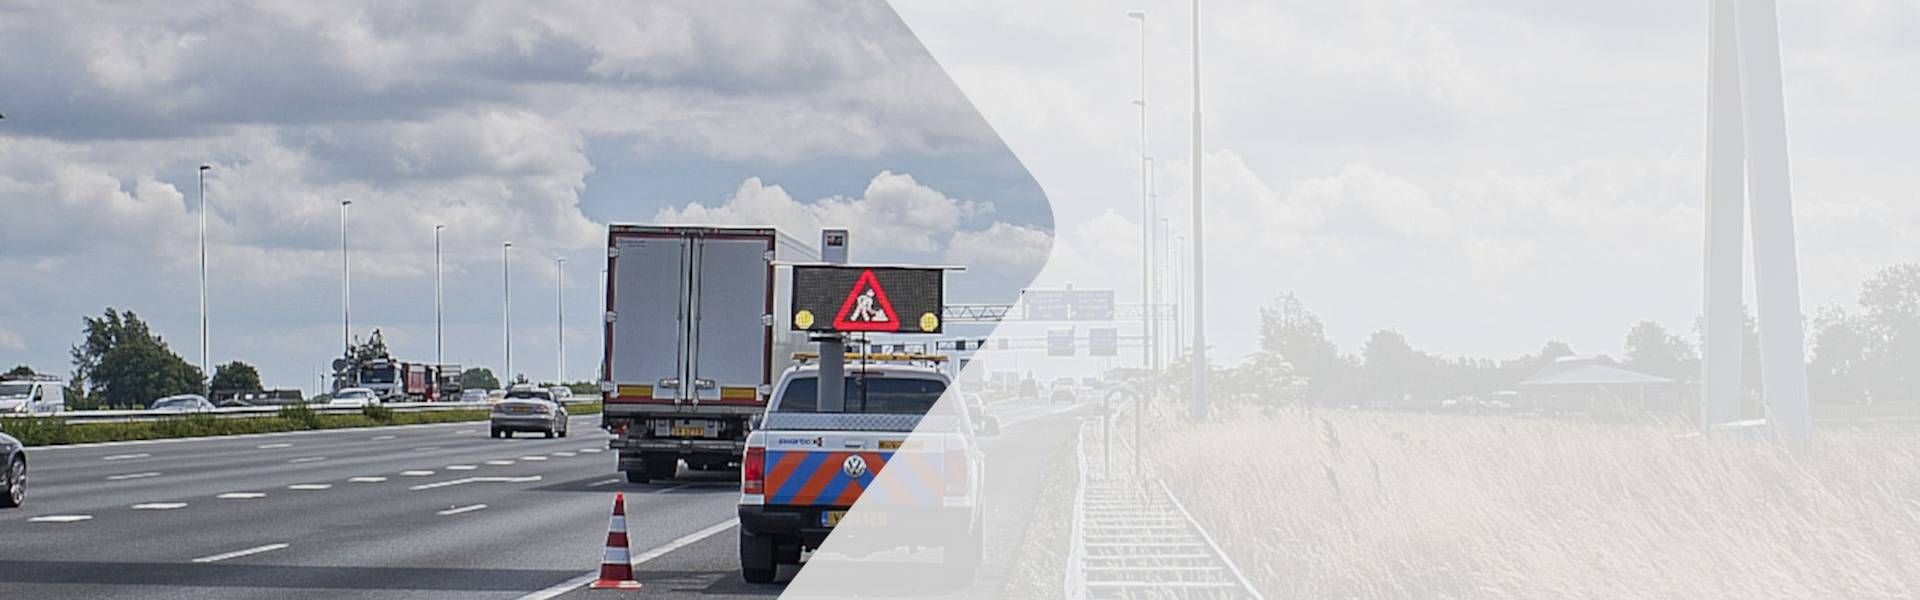 SWARCO stellt C-V2X Roadside Unit-Lösung für CONCORDA Amsterdam vor